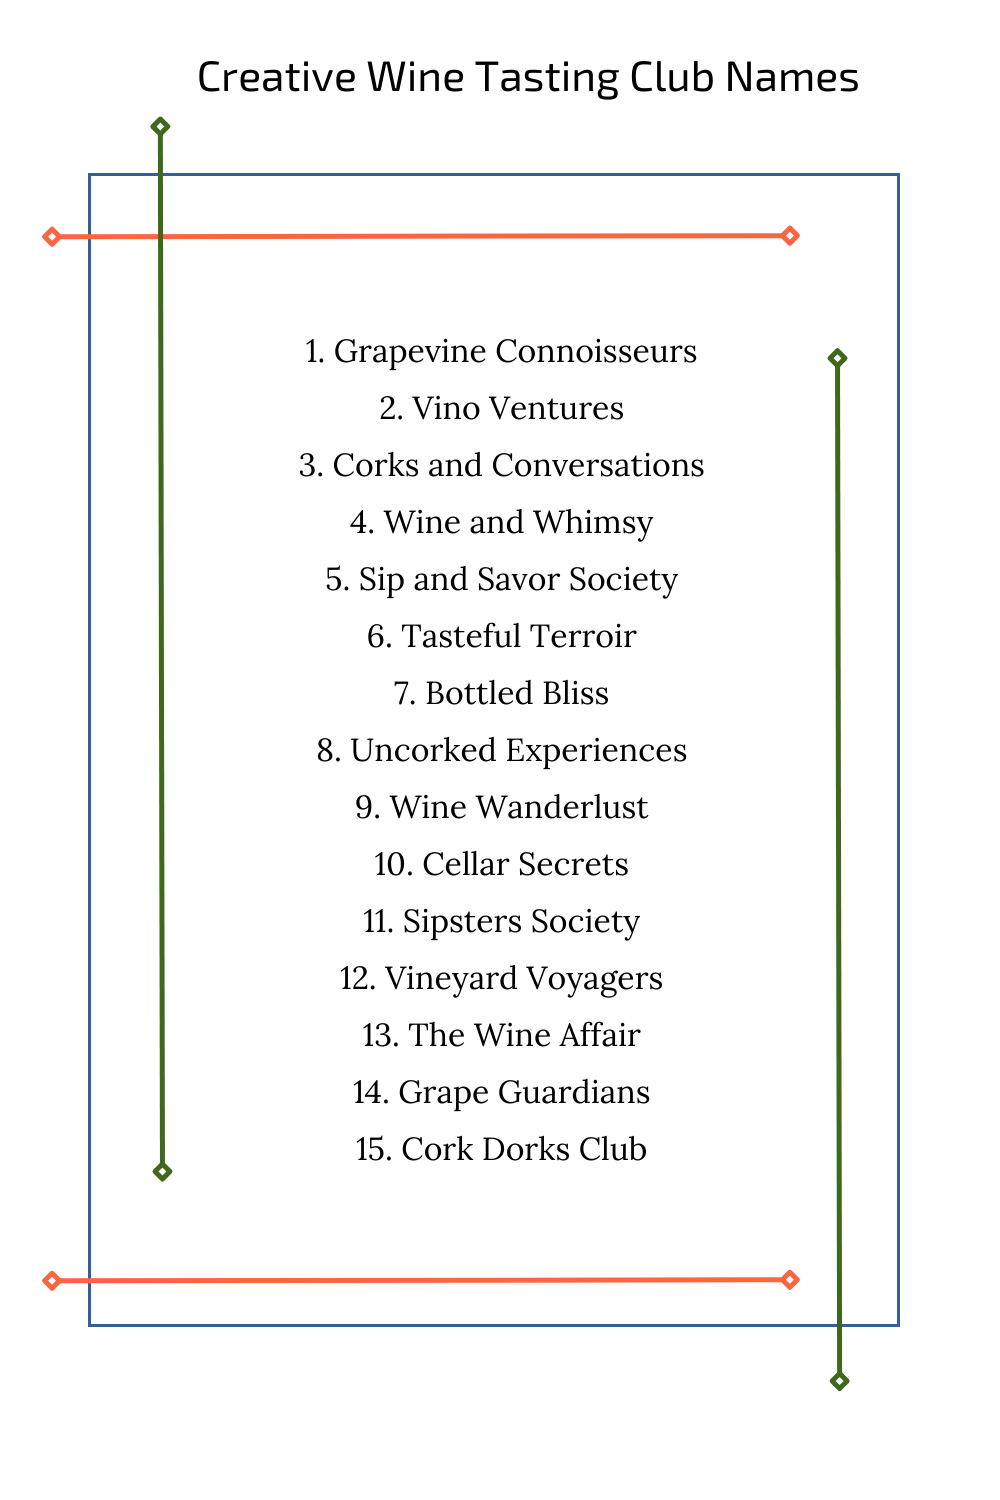 Creative Wine Tasting Club Names